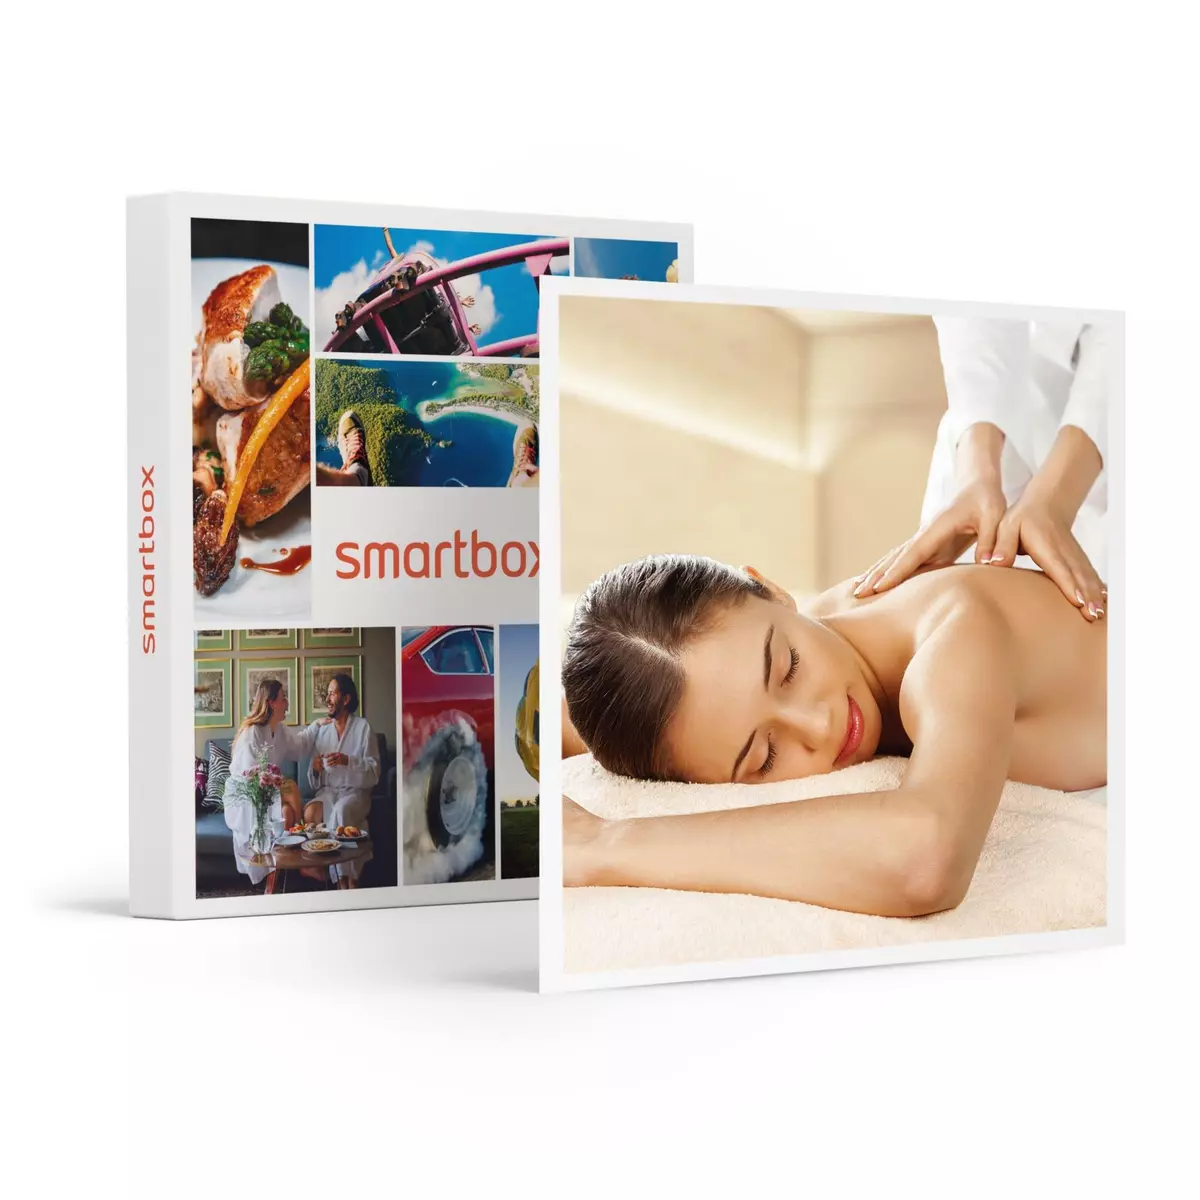 Smartbox Soin esthétique Guinot pour un moment de relaxation à soi - Coffret Cadeau Bien-être